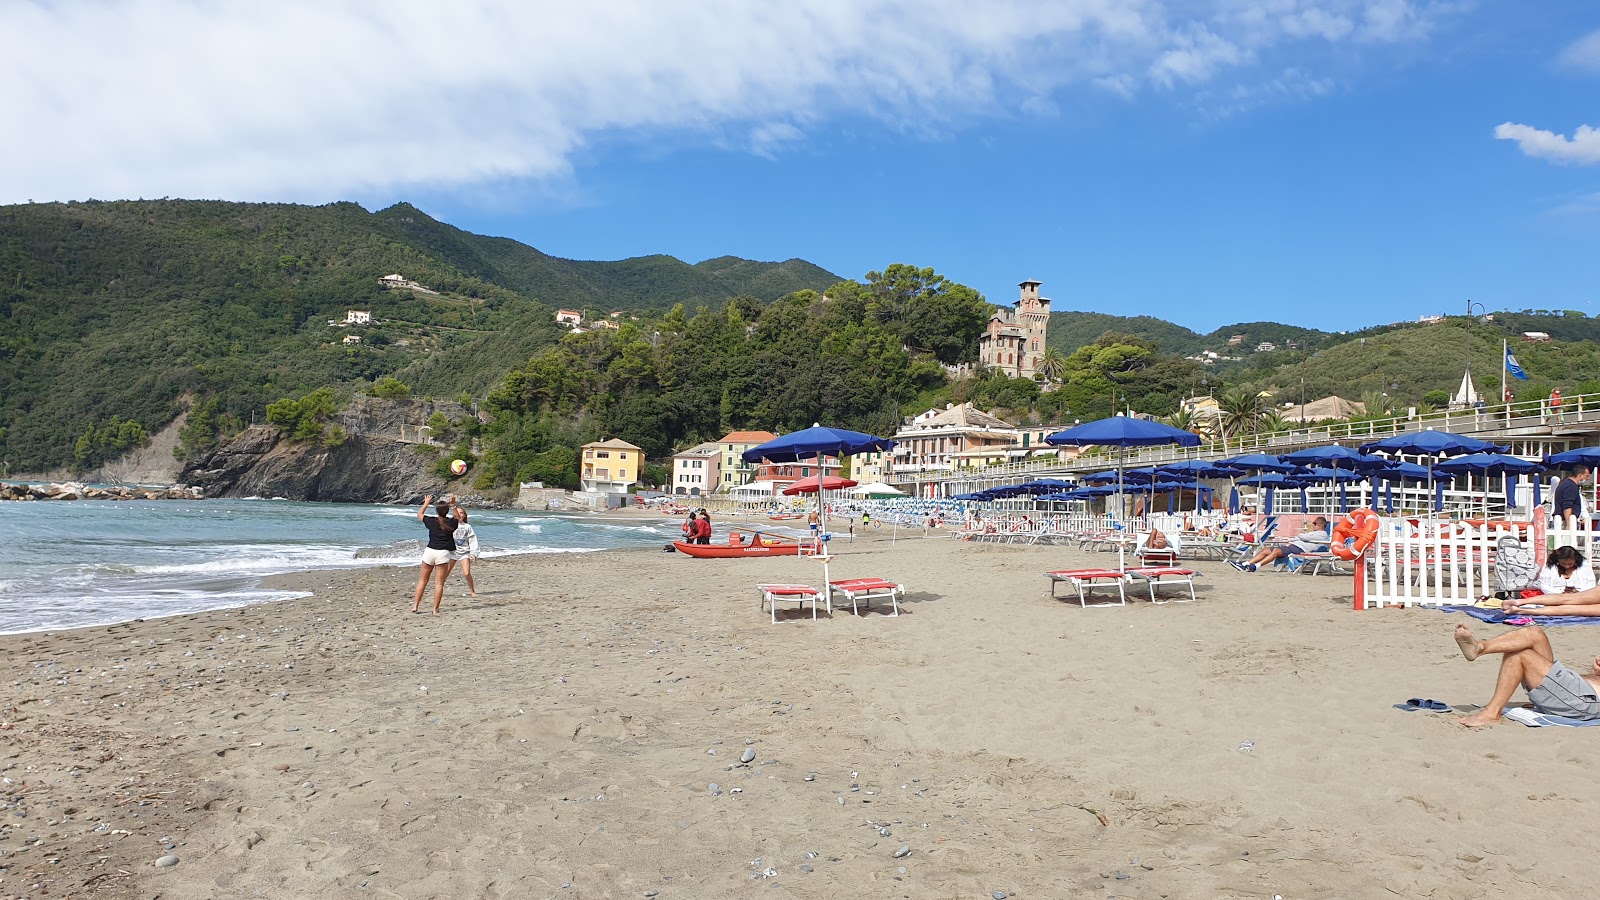 Foto de Spiaggia Moneglia - recomendado para viajantes em família com crianças